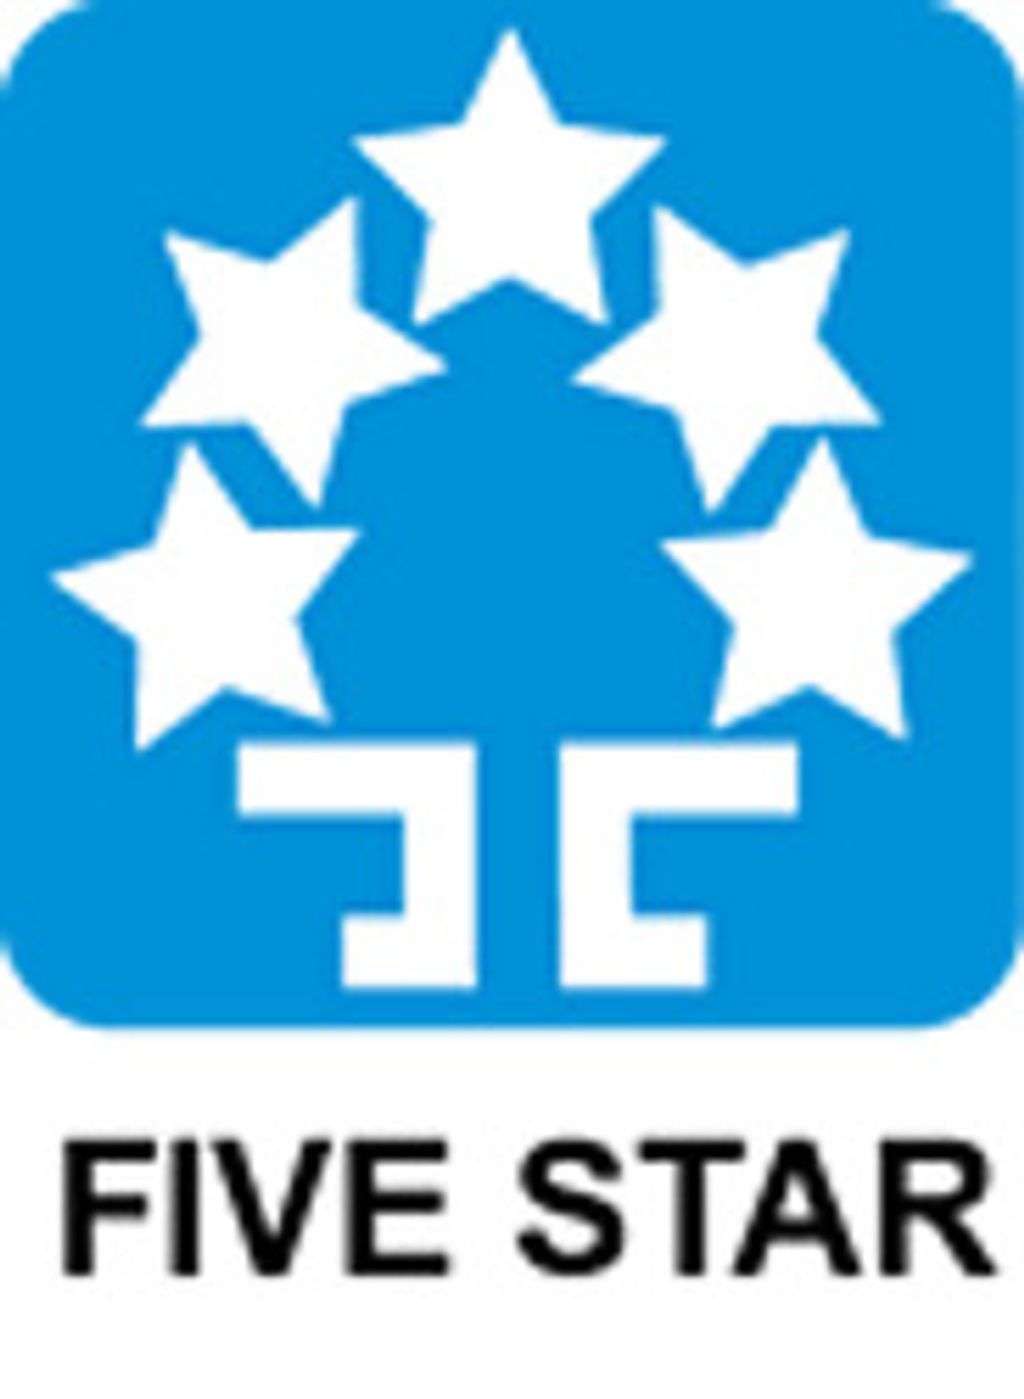 FIVE STAR SEIKI Co. Ltd.